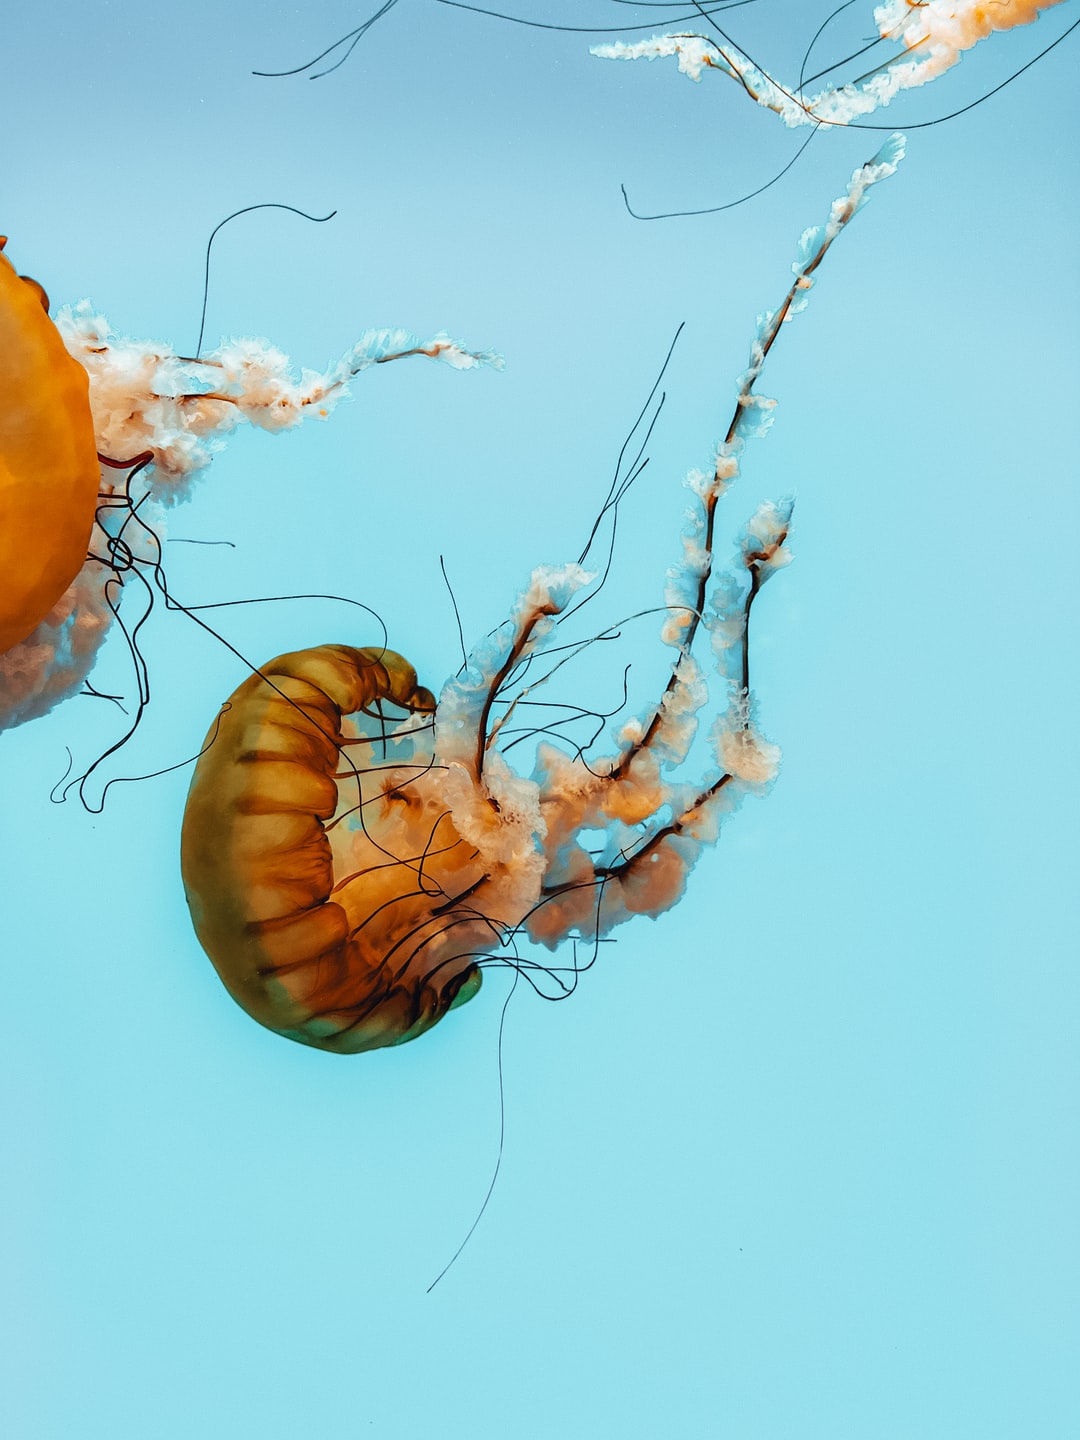 22 wichtige Fragen zu How Long Do Jellyfish Live In An Aquarium?